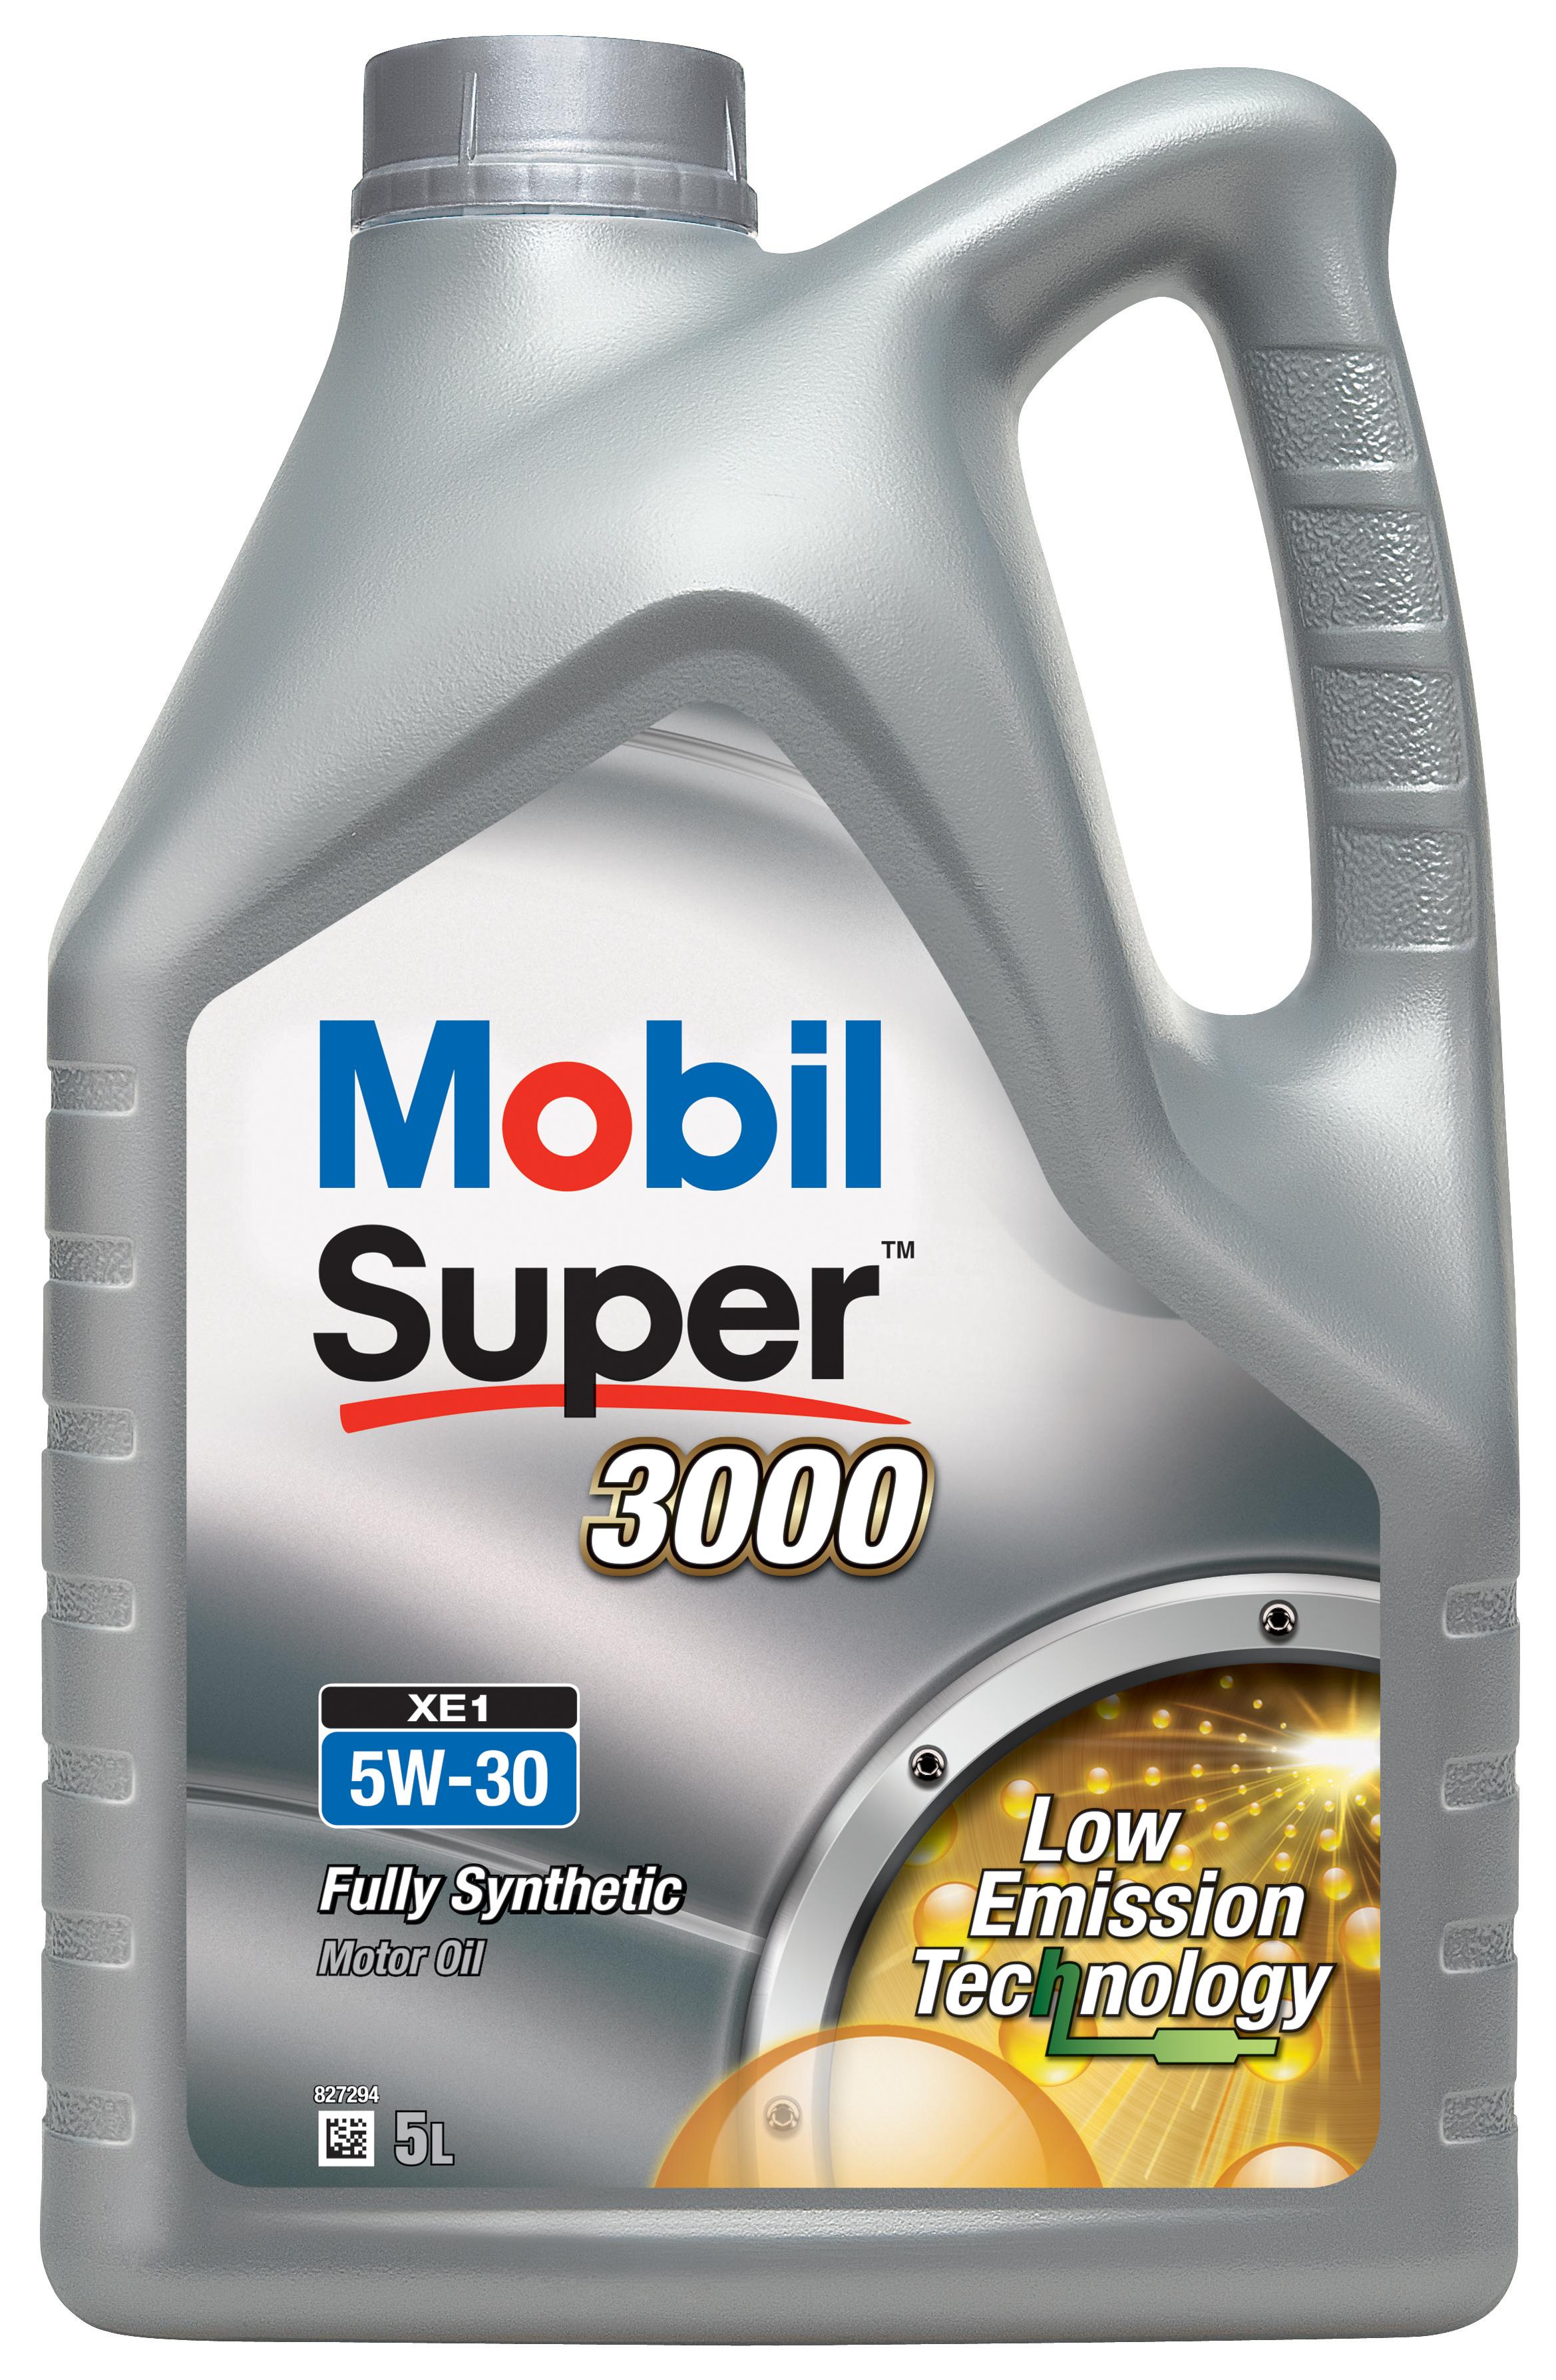 Mobil Super 3000 Xe1 5W-30 5 Litre